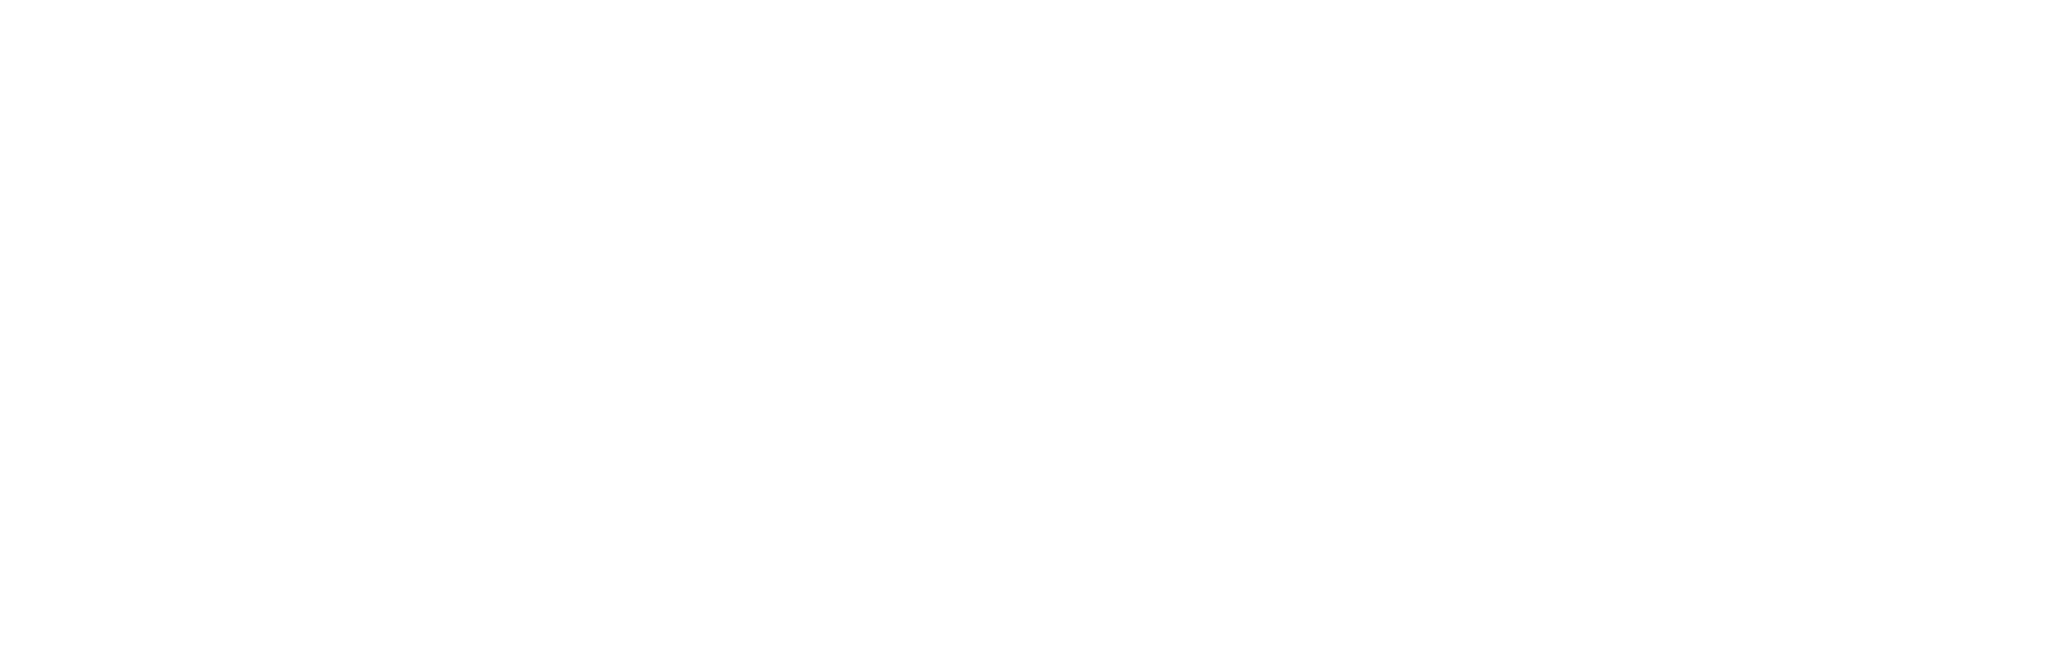 multimediamark logo redirect